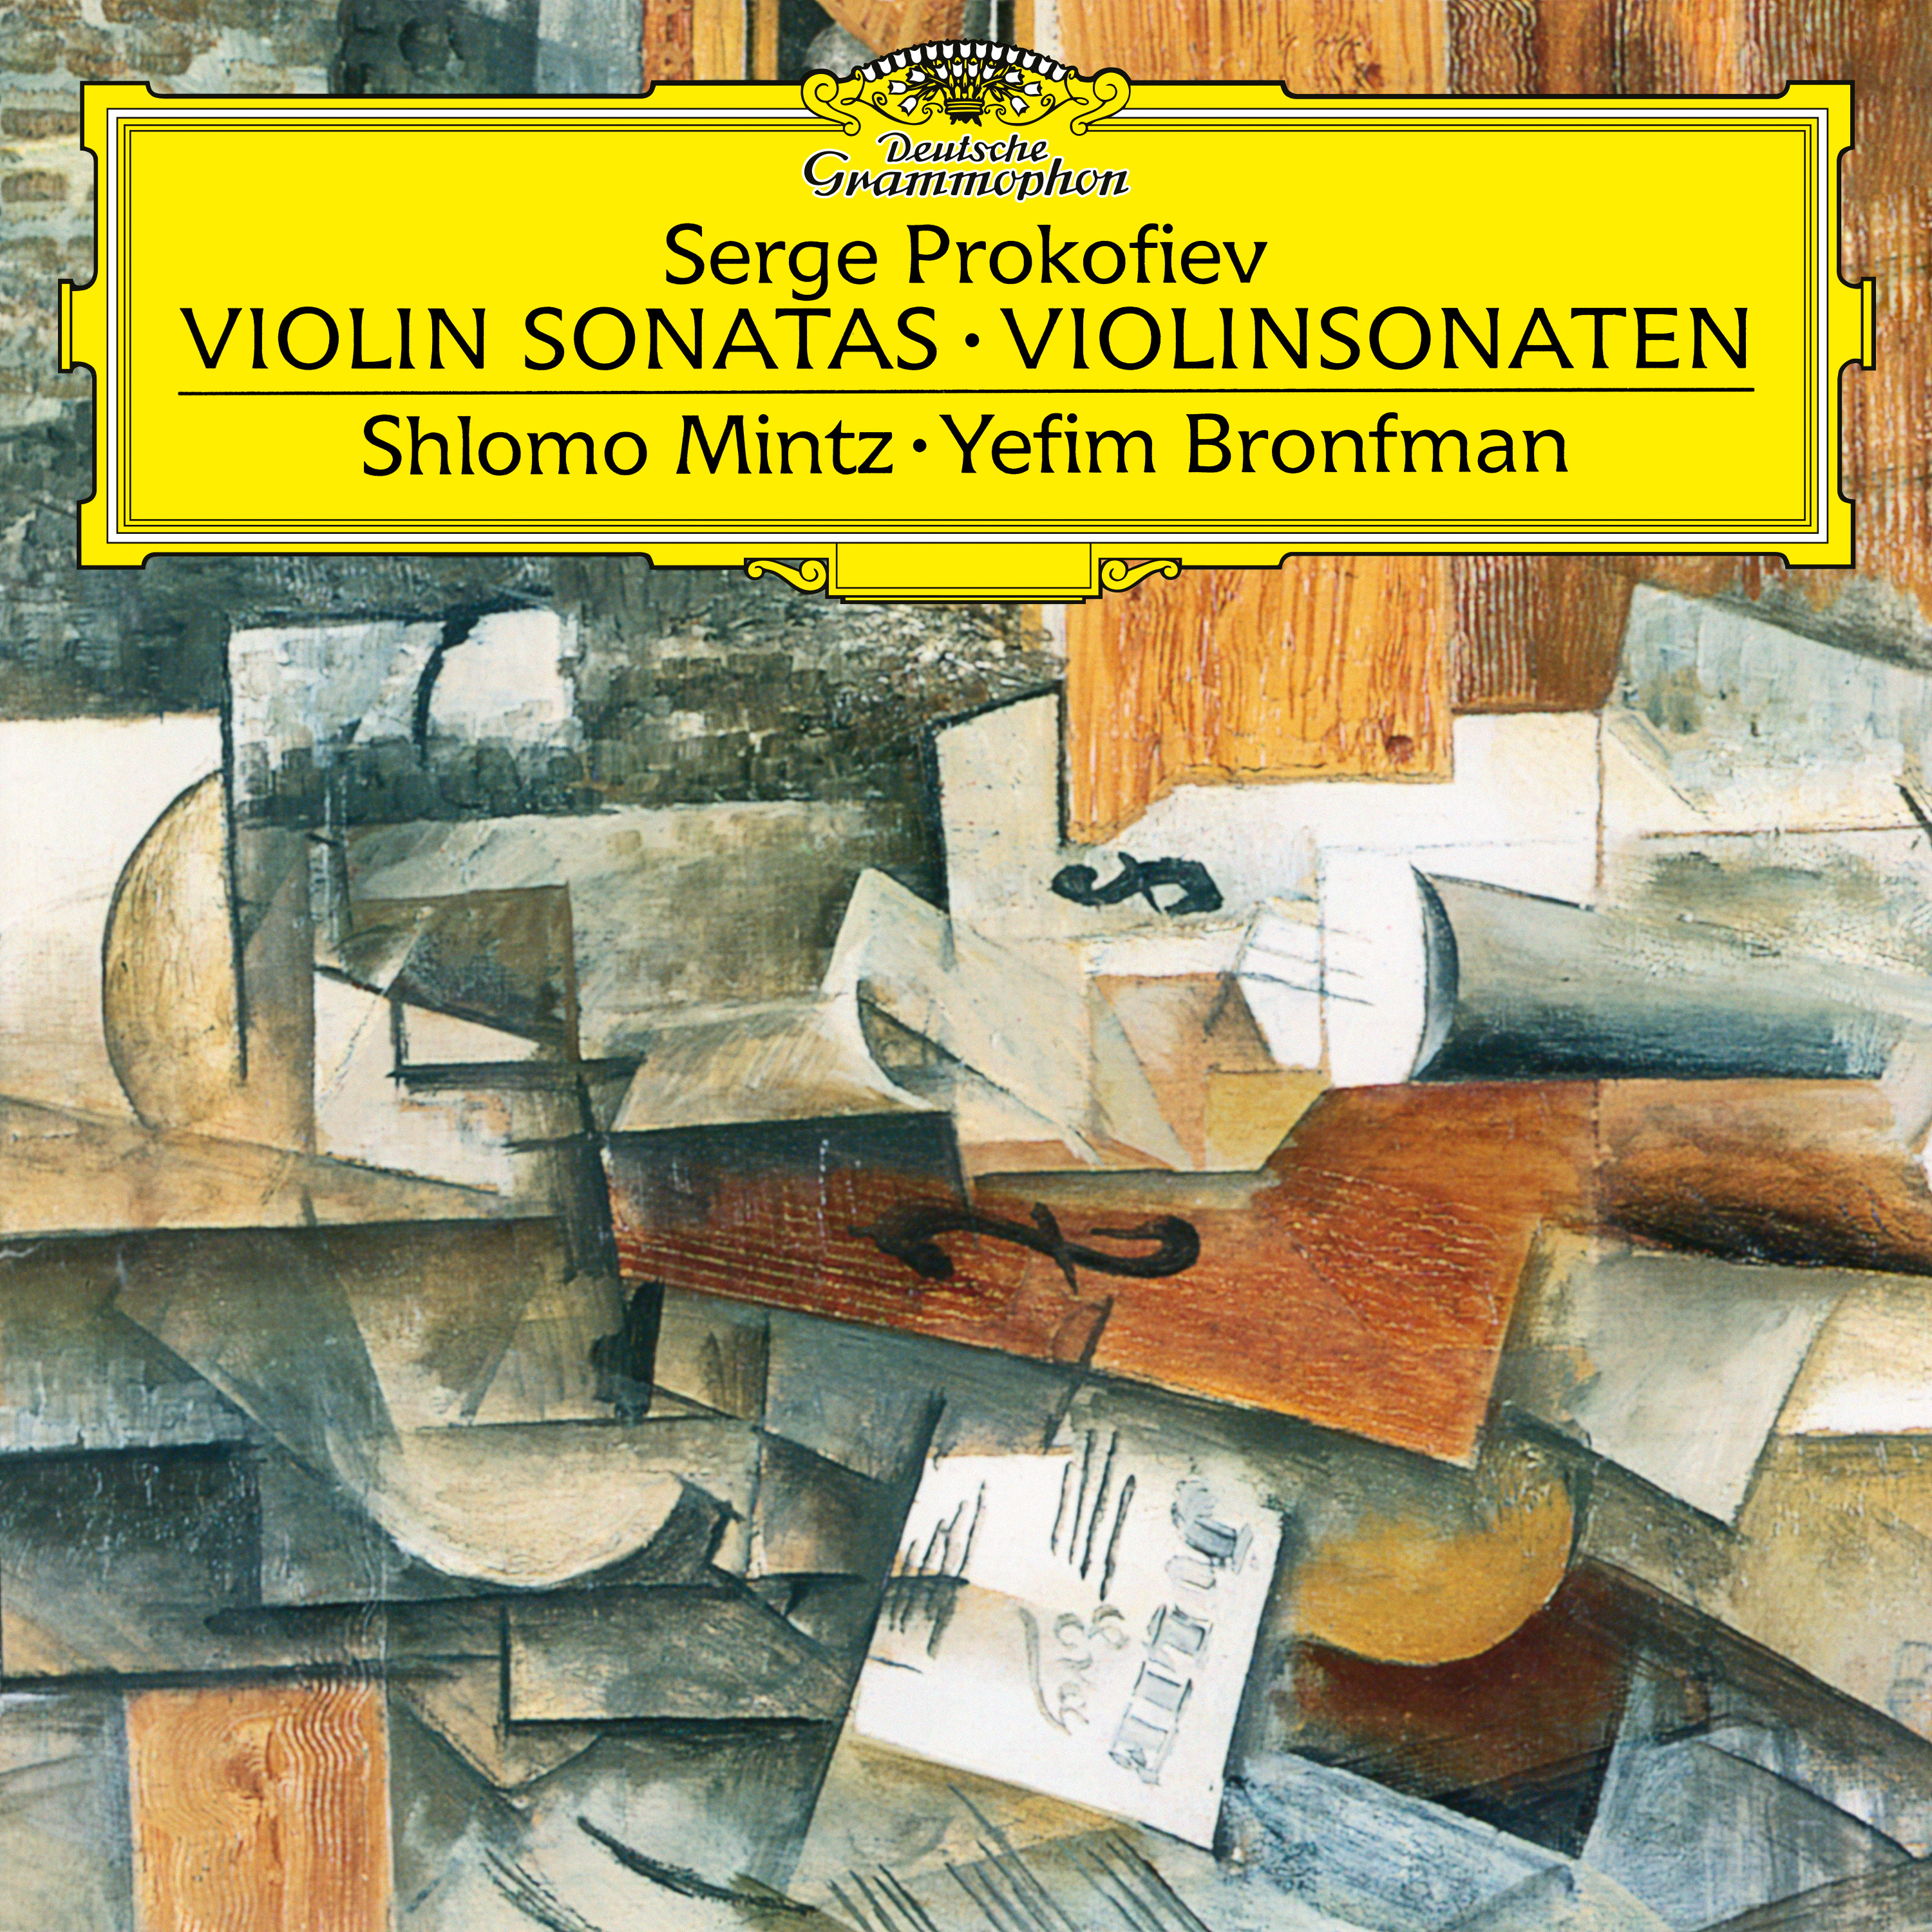 Sonata for Violin and Piano No.2 in D, Op.94b:1. Moderato